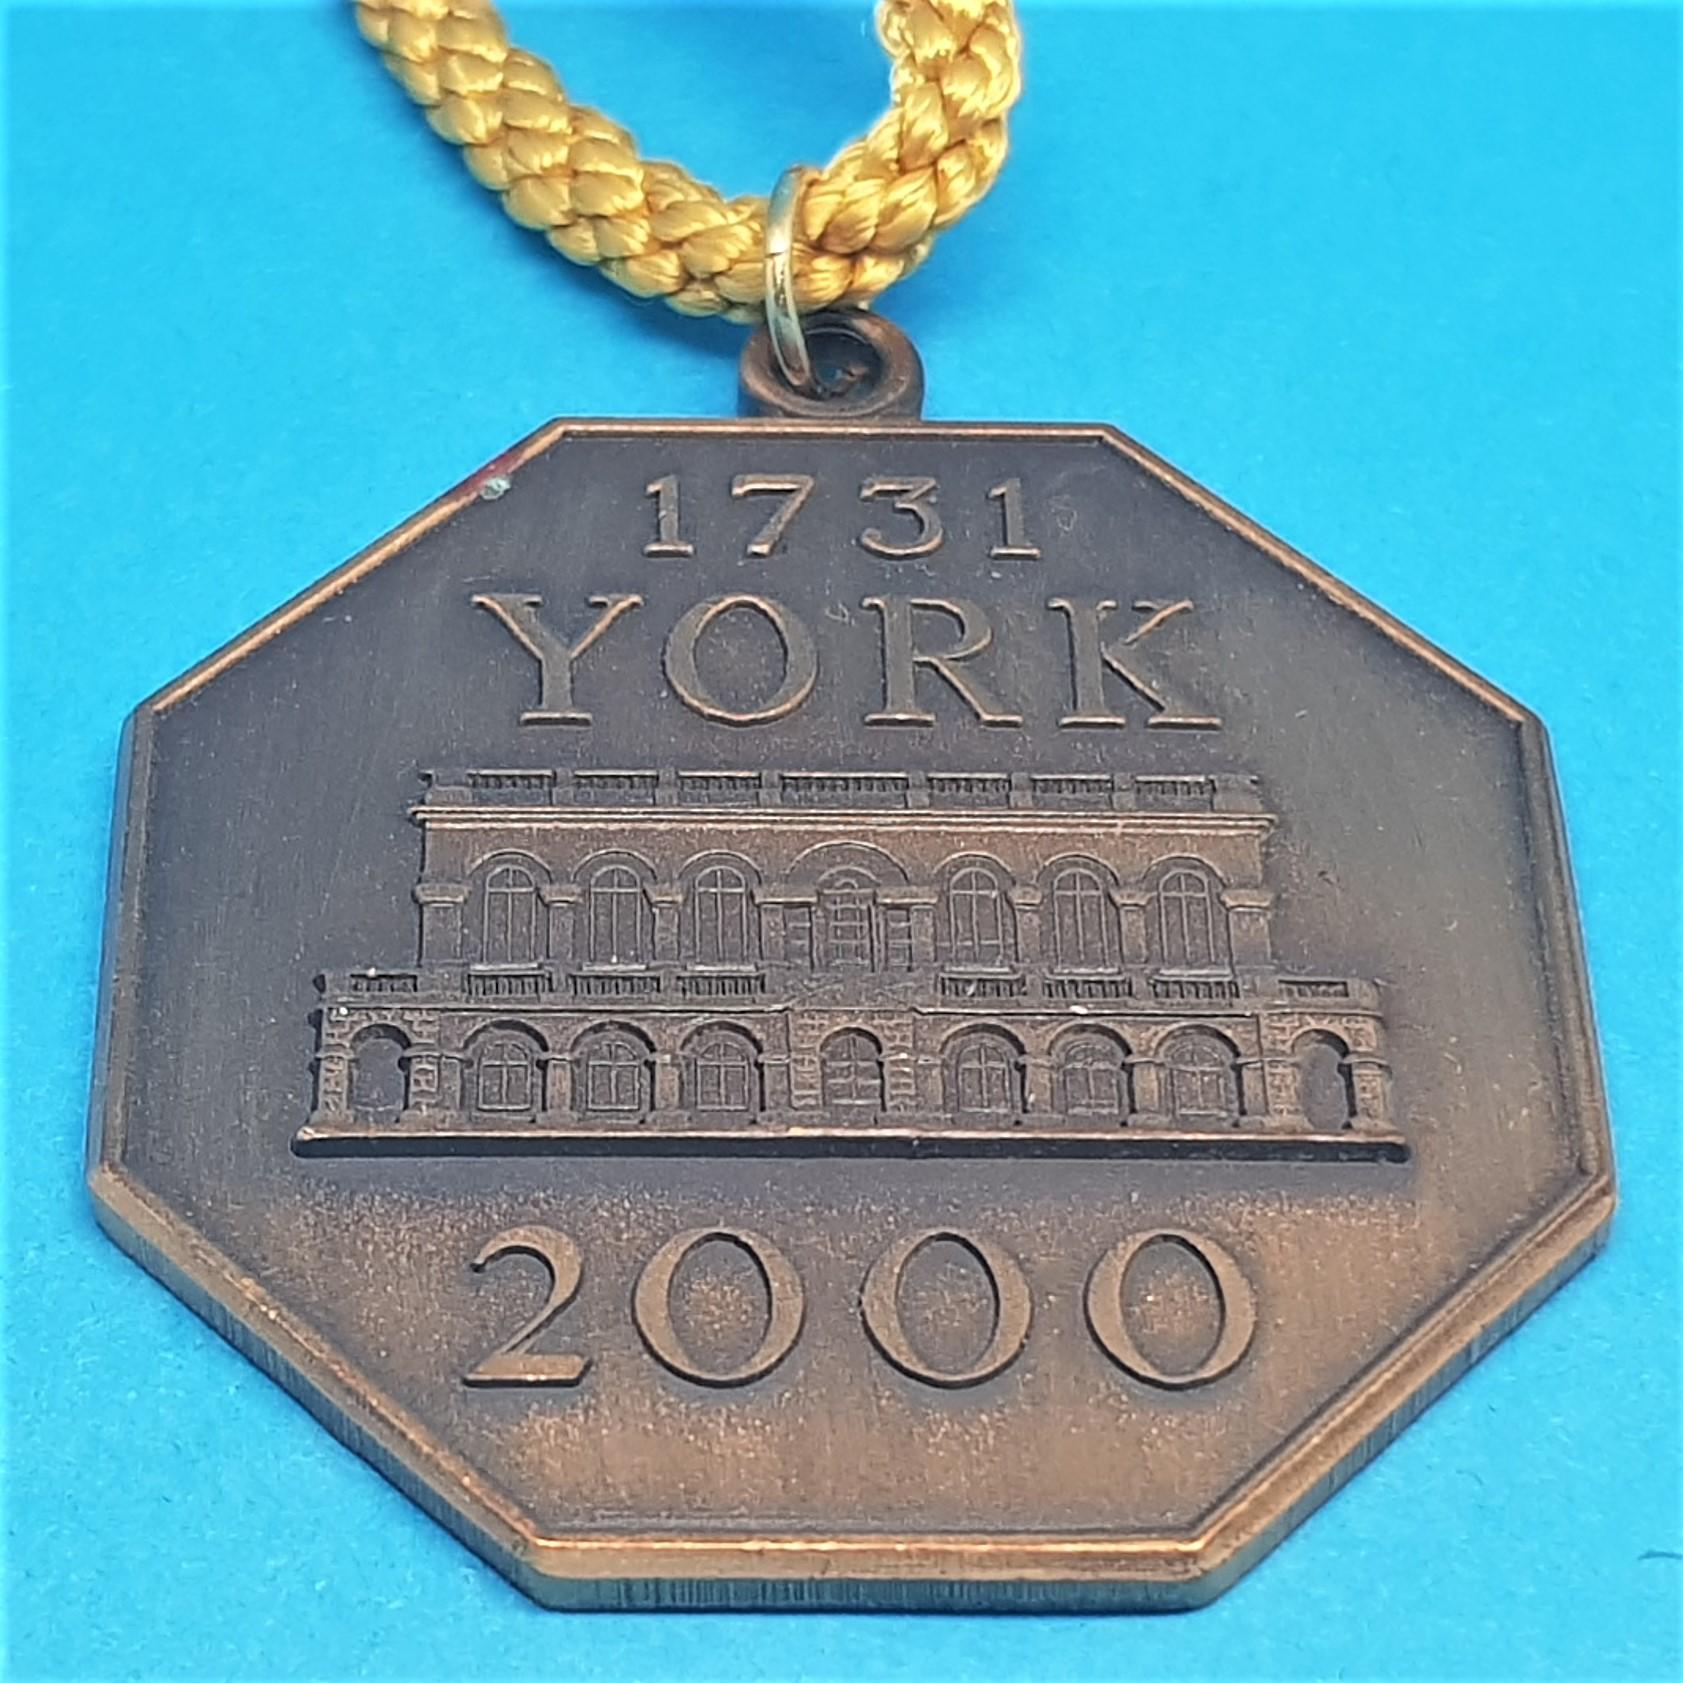 York 2000